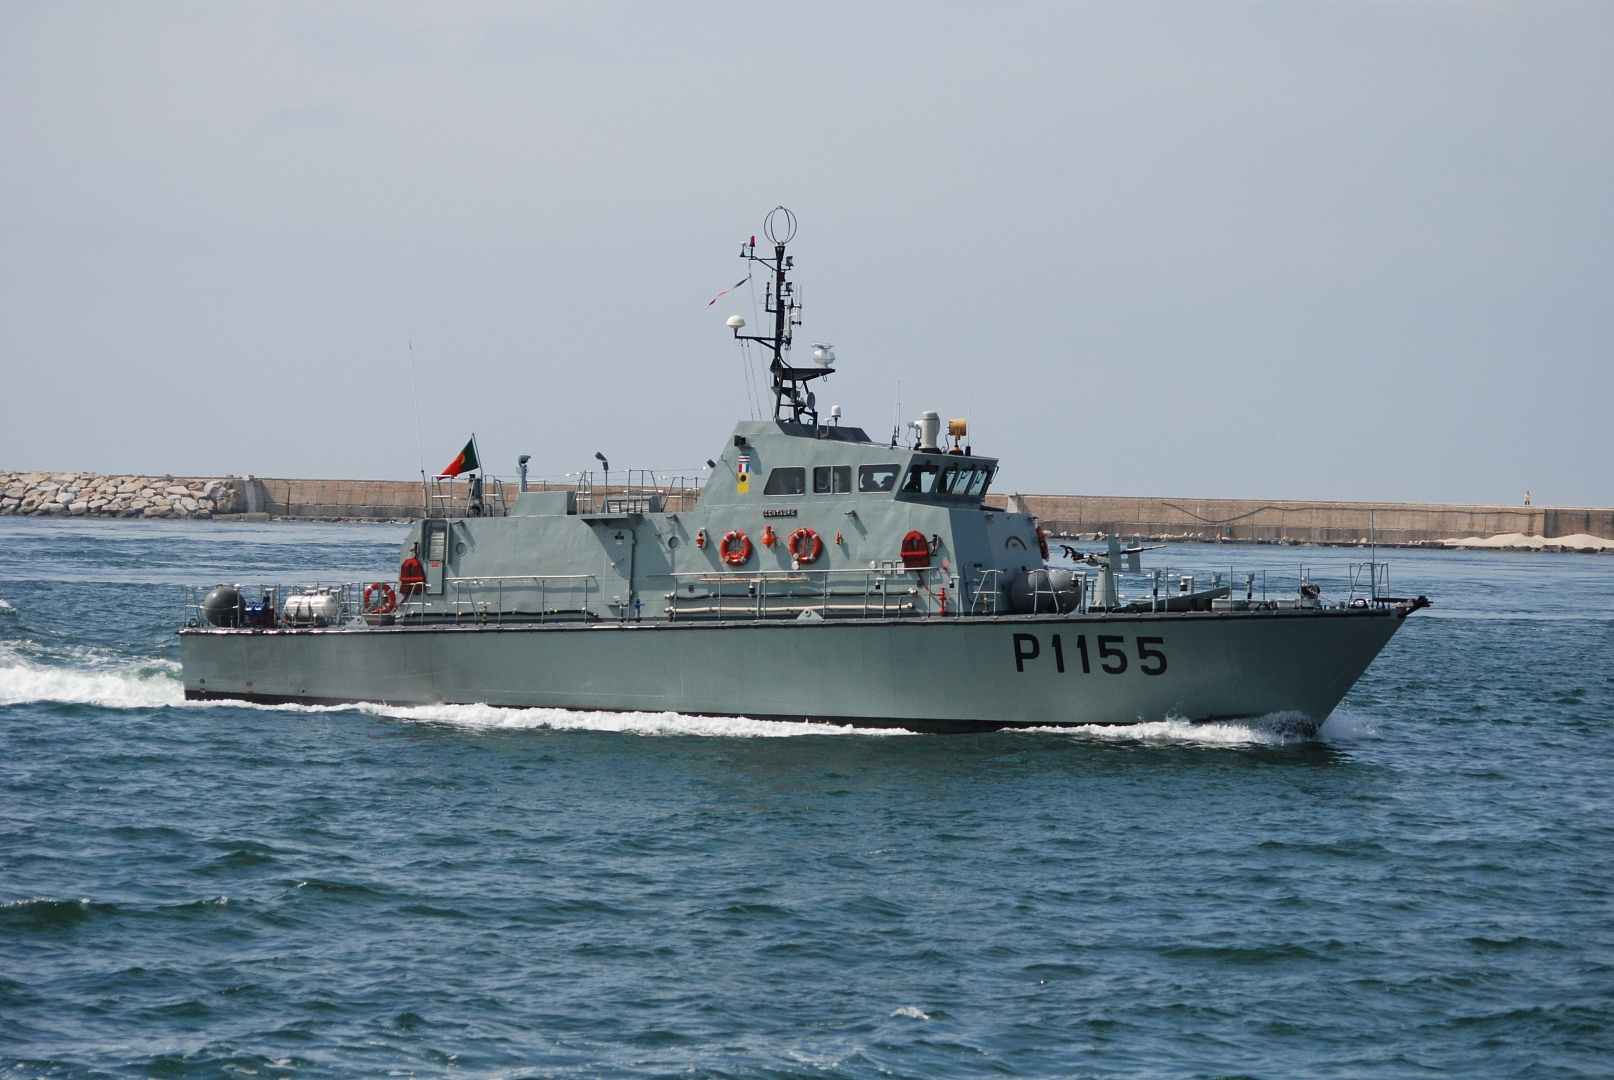 Португальские военнослужащие отказались сопровождать российское судно